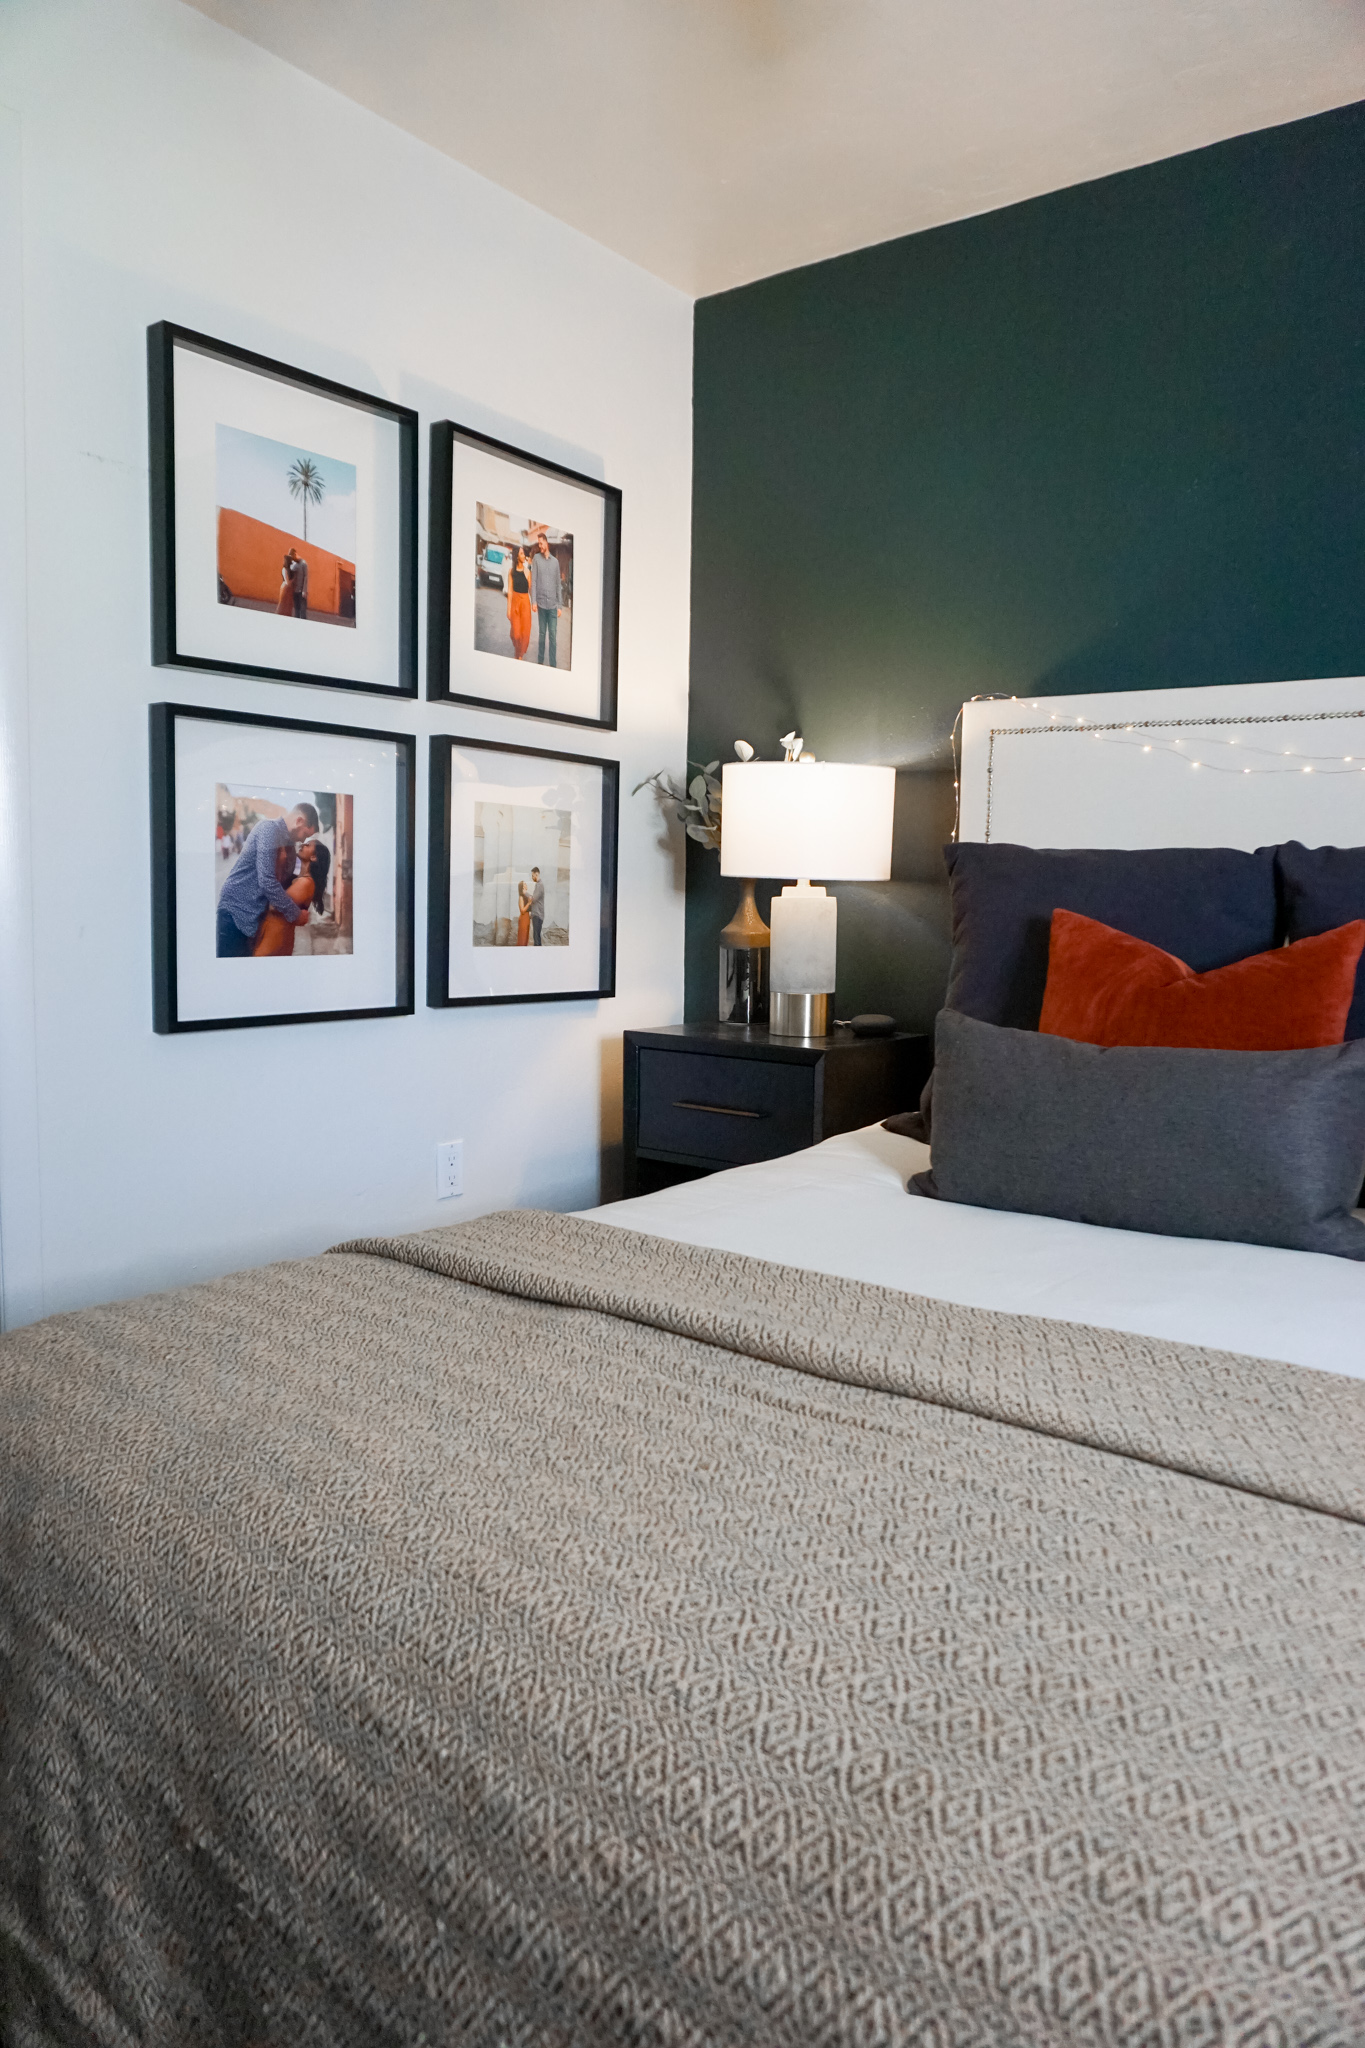 Our Master Bedroom Decor and DIY Upholstered Bed Frame- Monique McHugh Blog